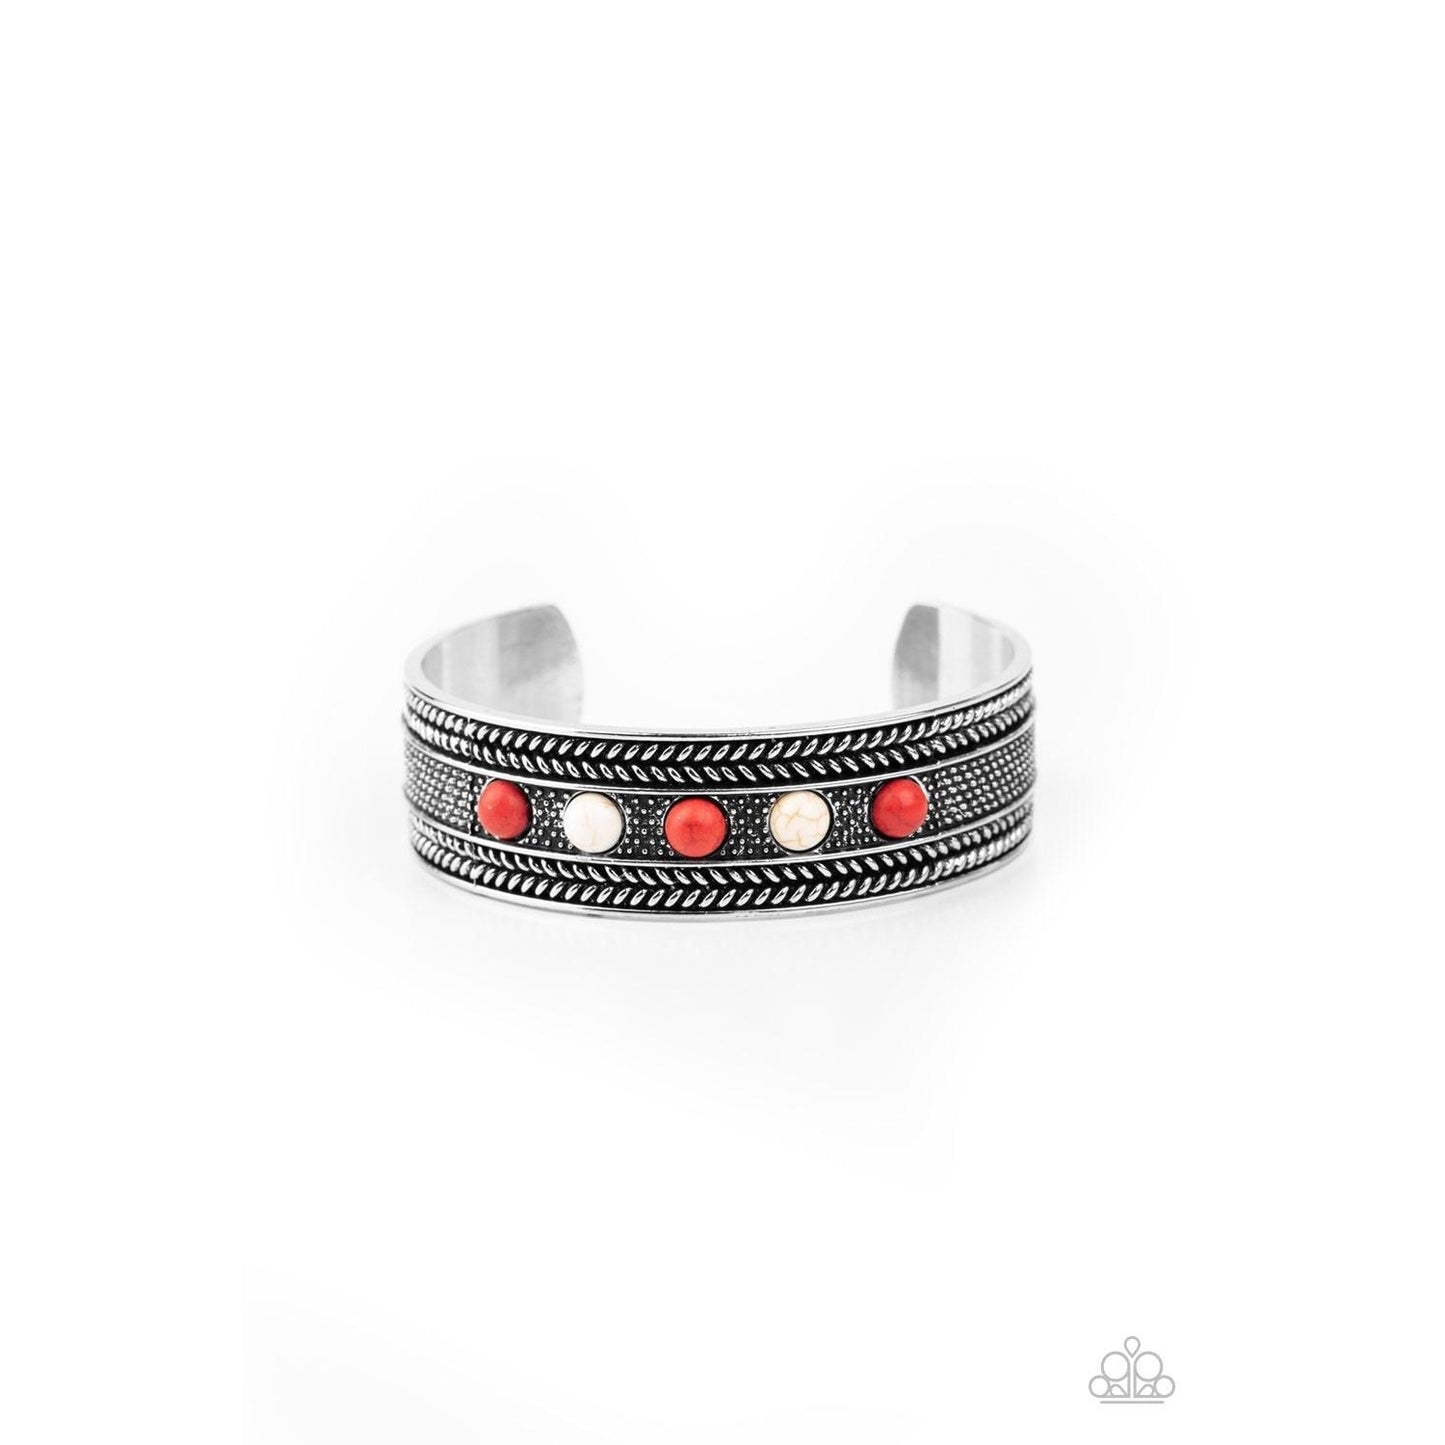 Quarry Quake Red Cuff Bracelet